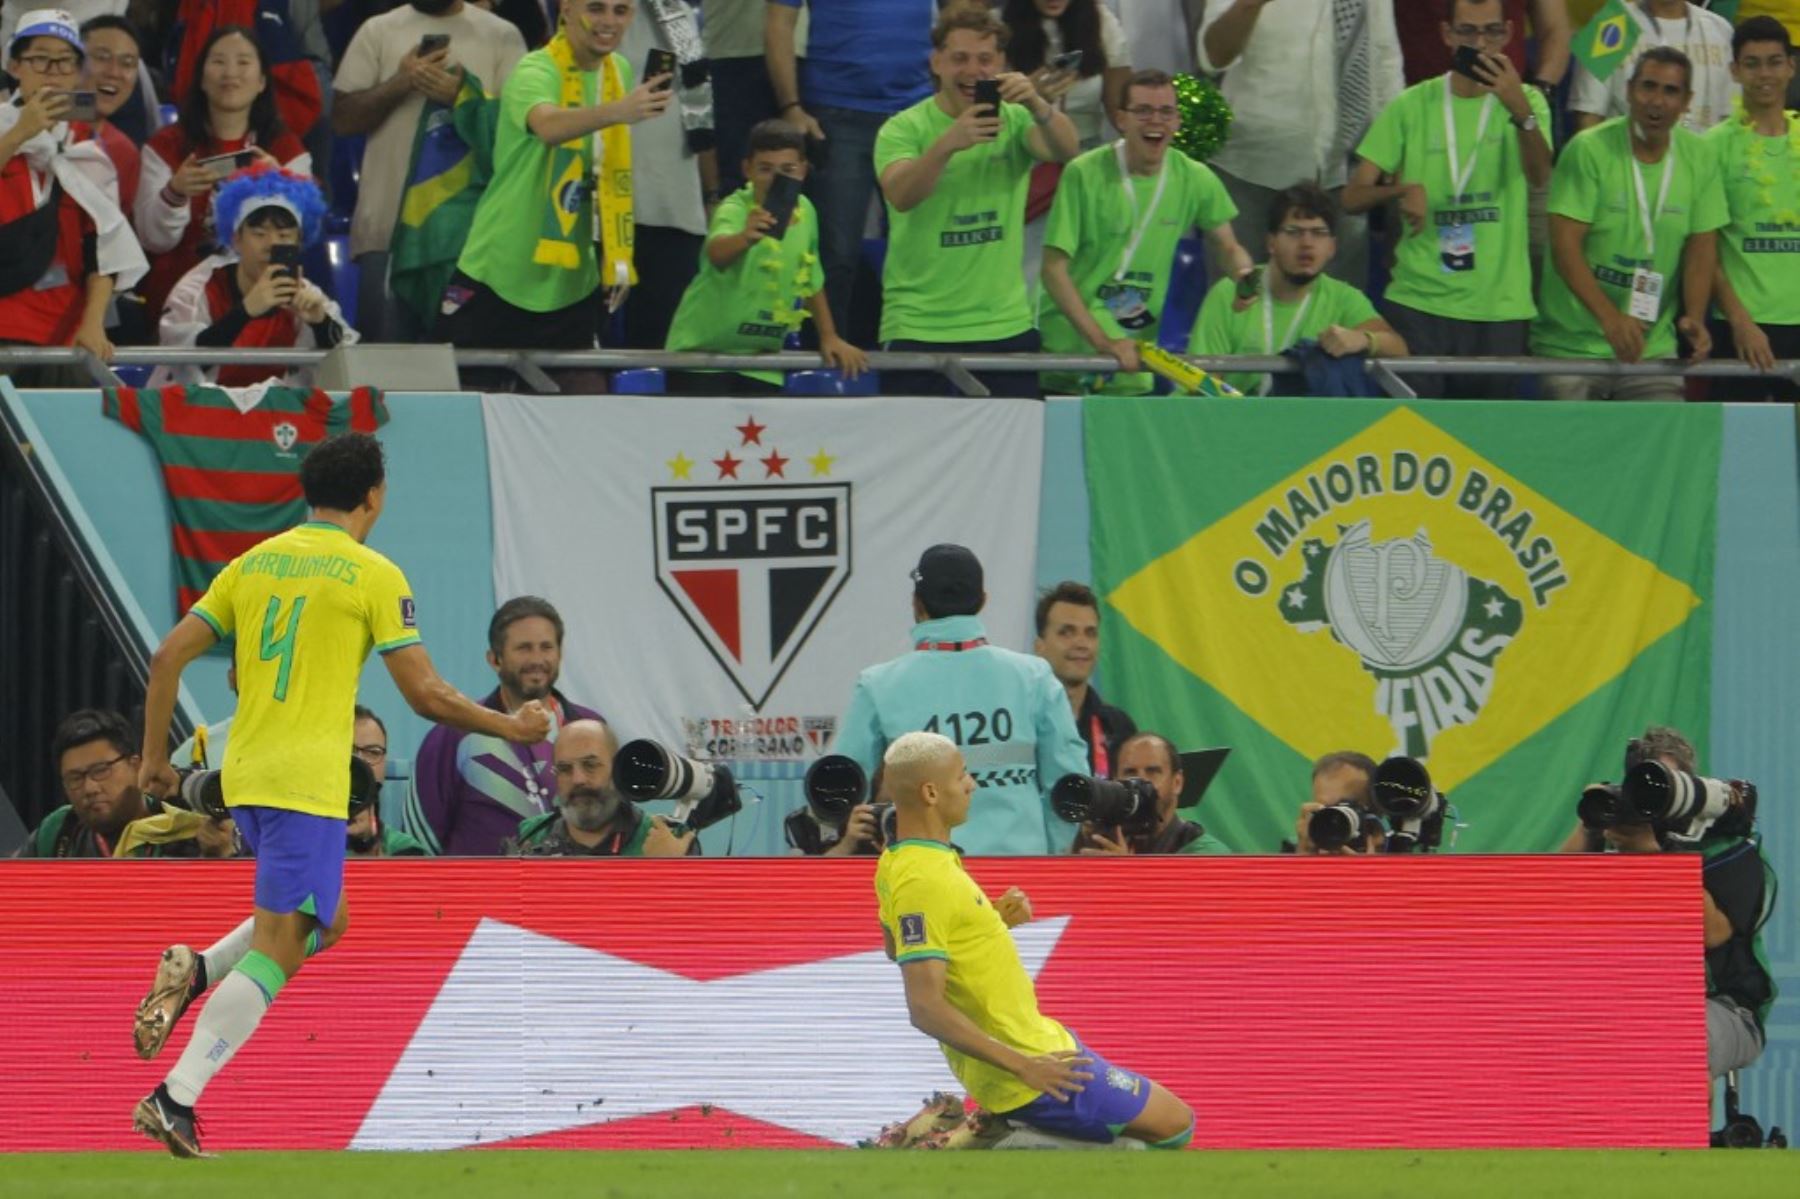 El delantero brasileño Richarlison celebra marcar el tercer gol de su equipo durante el partido de fútbol de octavos de final de la Copa Mundial Qatar 2022 entre Brasil y Corea del Sur en el Estadio 974 en Doha el 5 de diciembre de 2022.
Foto: AFP